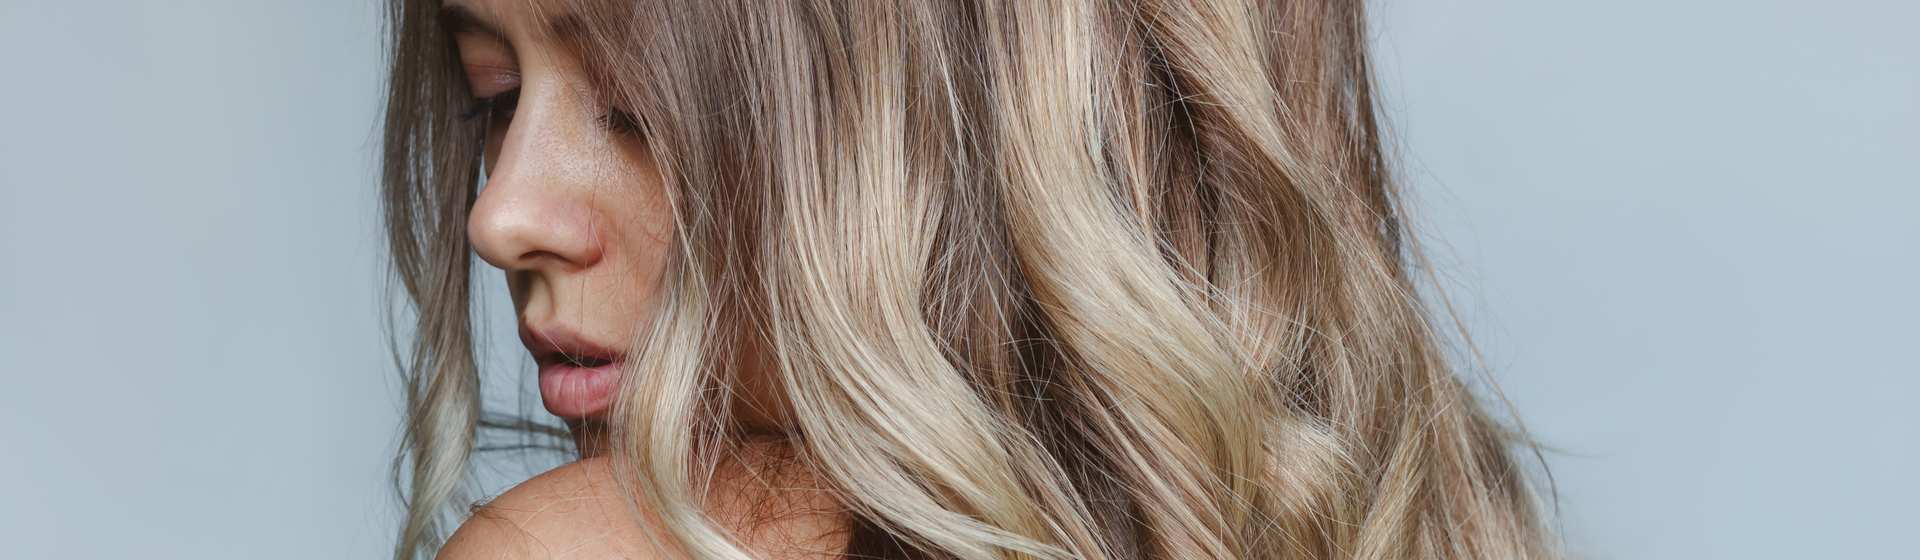 Luzes no cabelo: como tratar e recuperar os fios depois da descoloração?